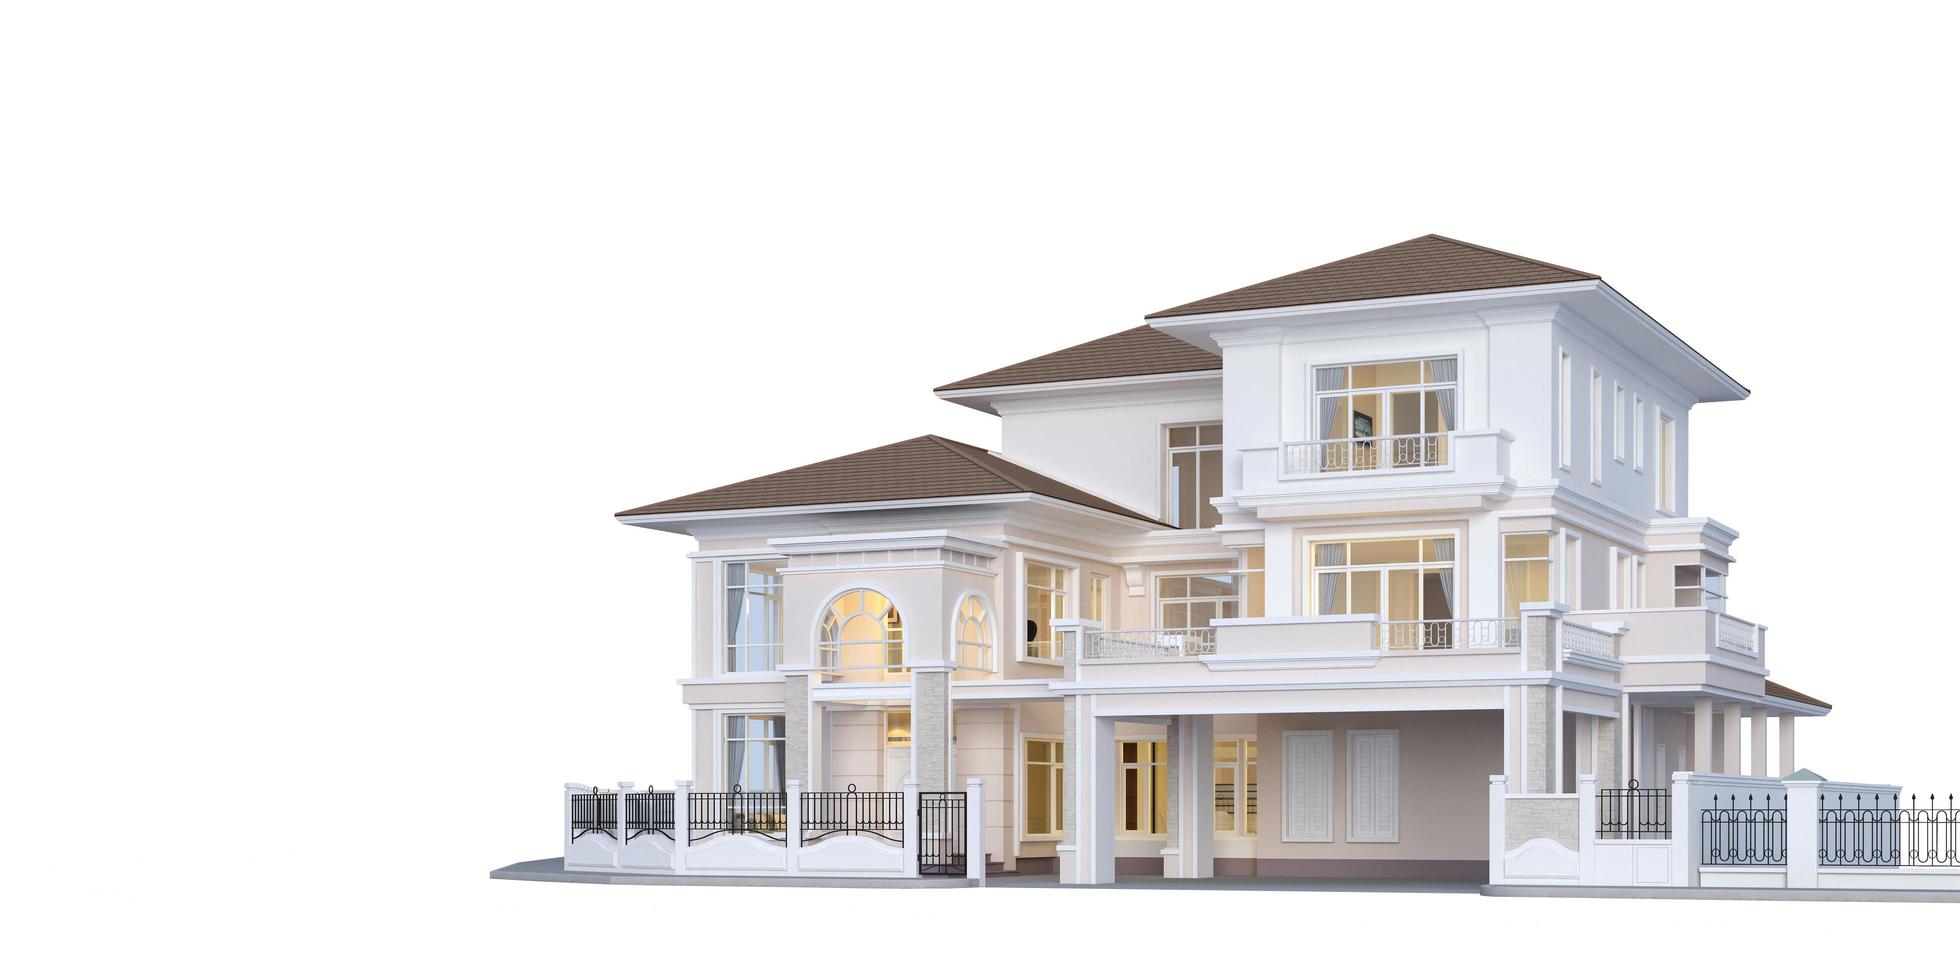 casa de lujo exterior.estilo clásico sobre fondo blanco.concepto para la venta de bienes raíces o inversión inmobiliaria representación 3d foto